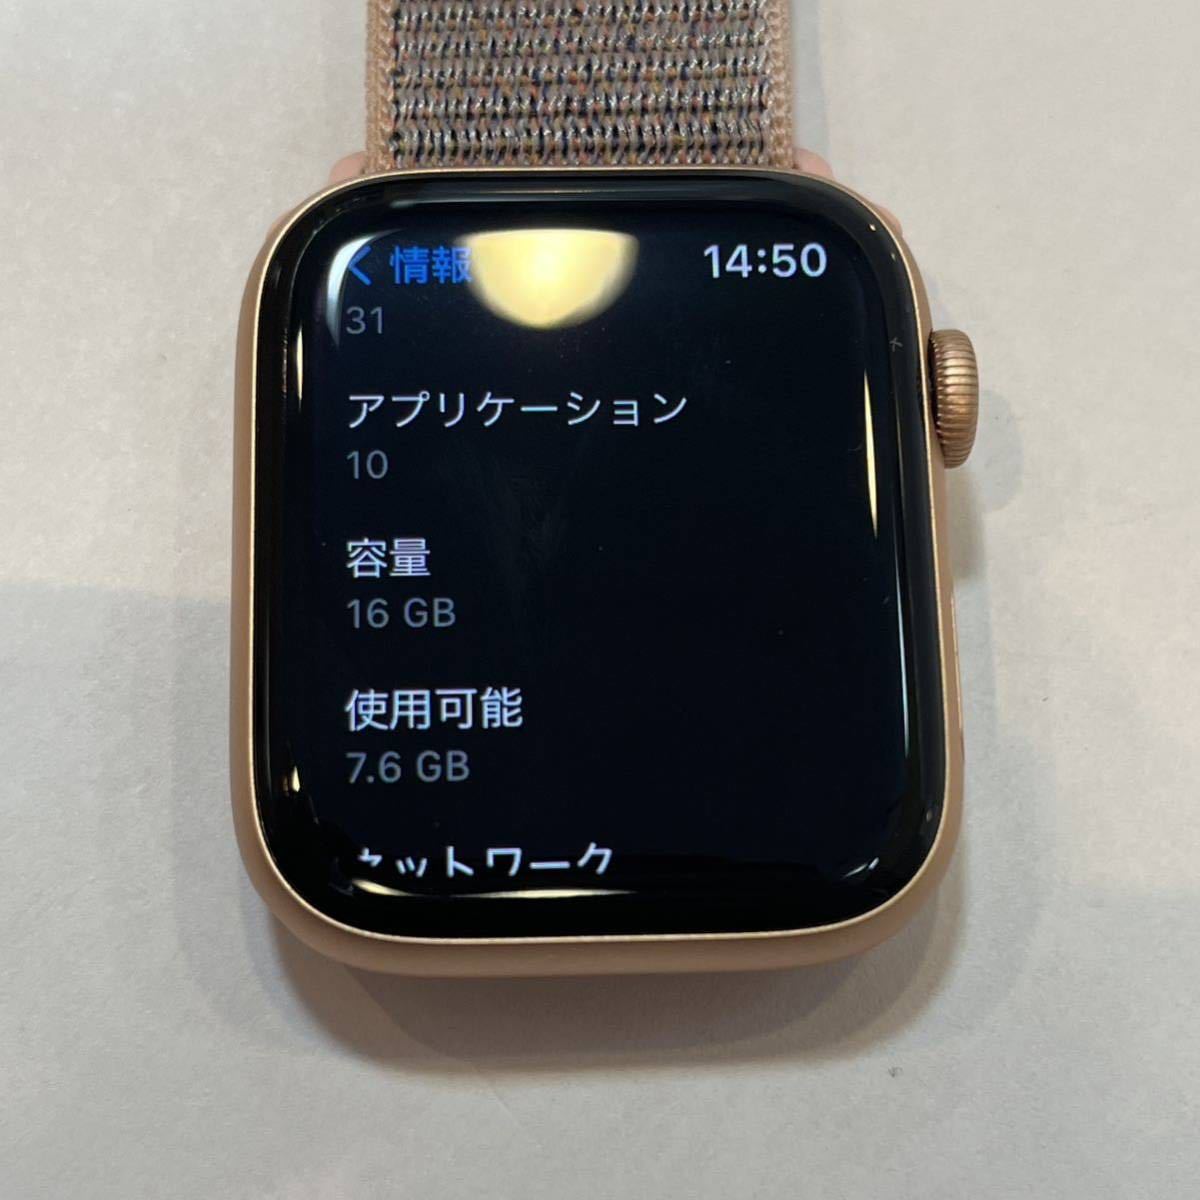 [. сделка ]*Apple Watch Series 4 44mm MTVX2J/A* Apple часы | корпус | Gold |16GB| аккумулятор самый большая вместимость 100%|A2008|EA0